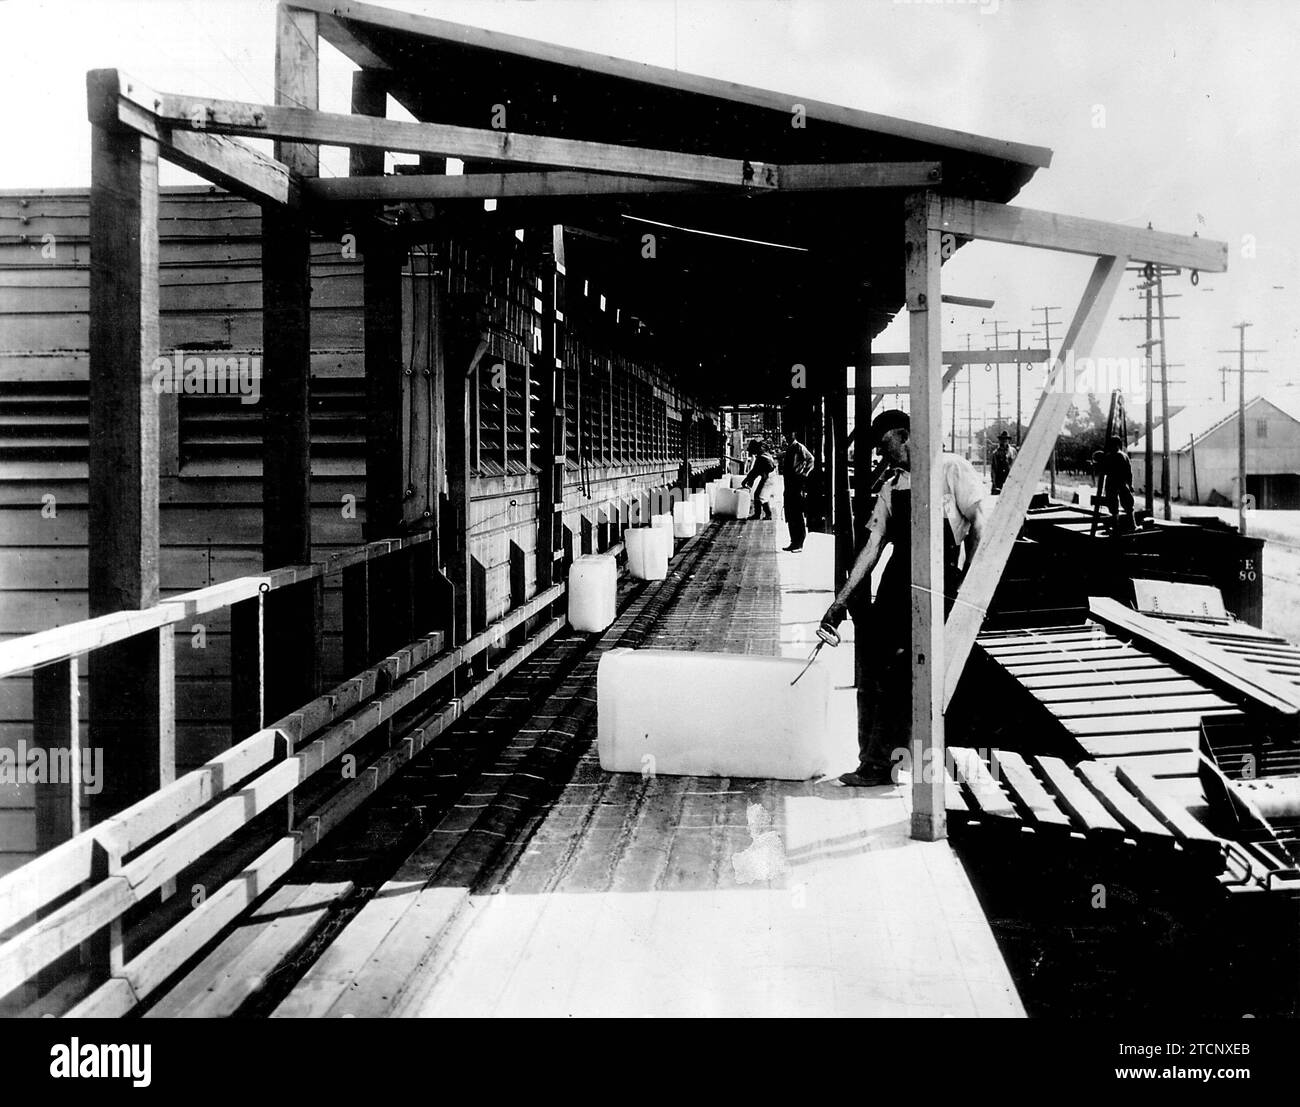 08/31/1926. Agricoltura negli Stati Uniti.1. Trasporto di blocchi di ghiaccio per un treno refrigerato caricato con arance. Crediti: Album / Archivo ABC Foto Stock